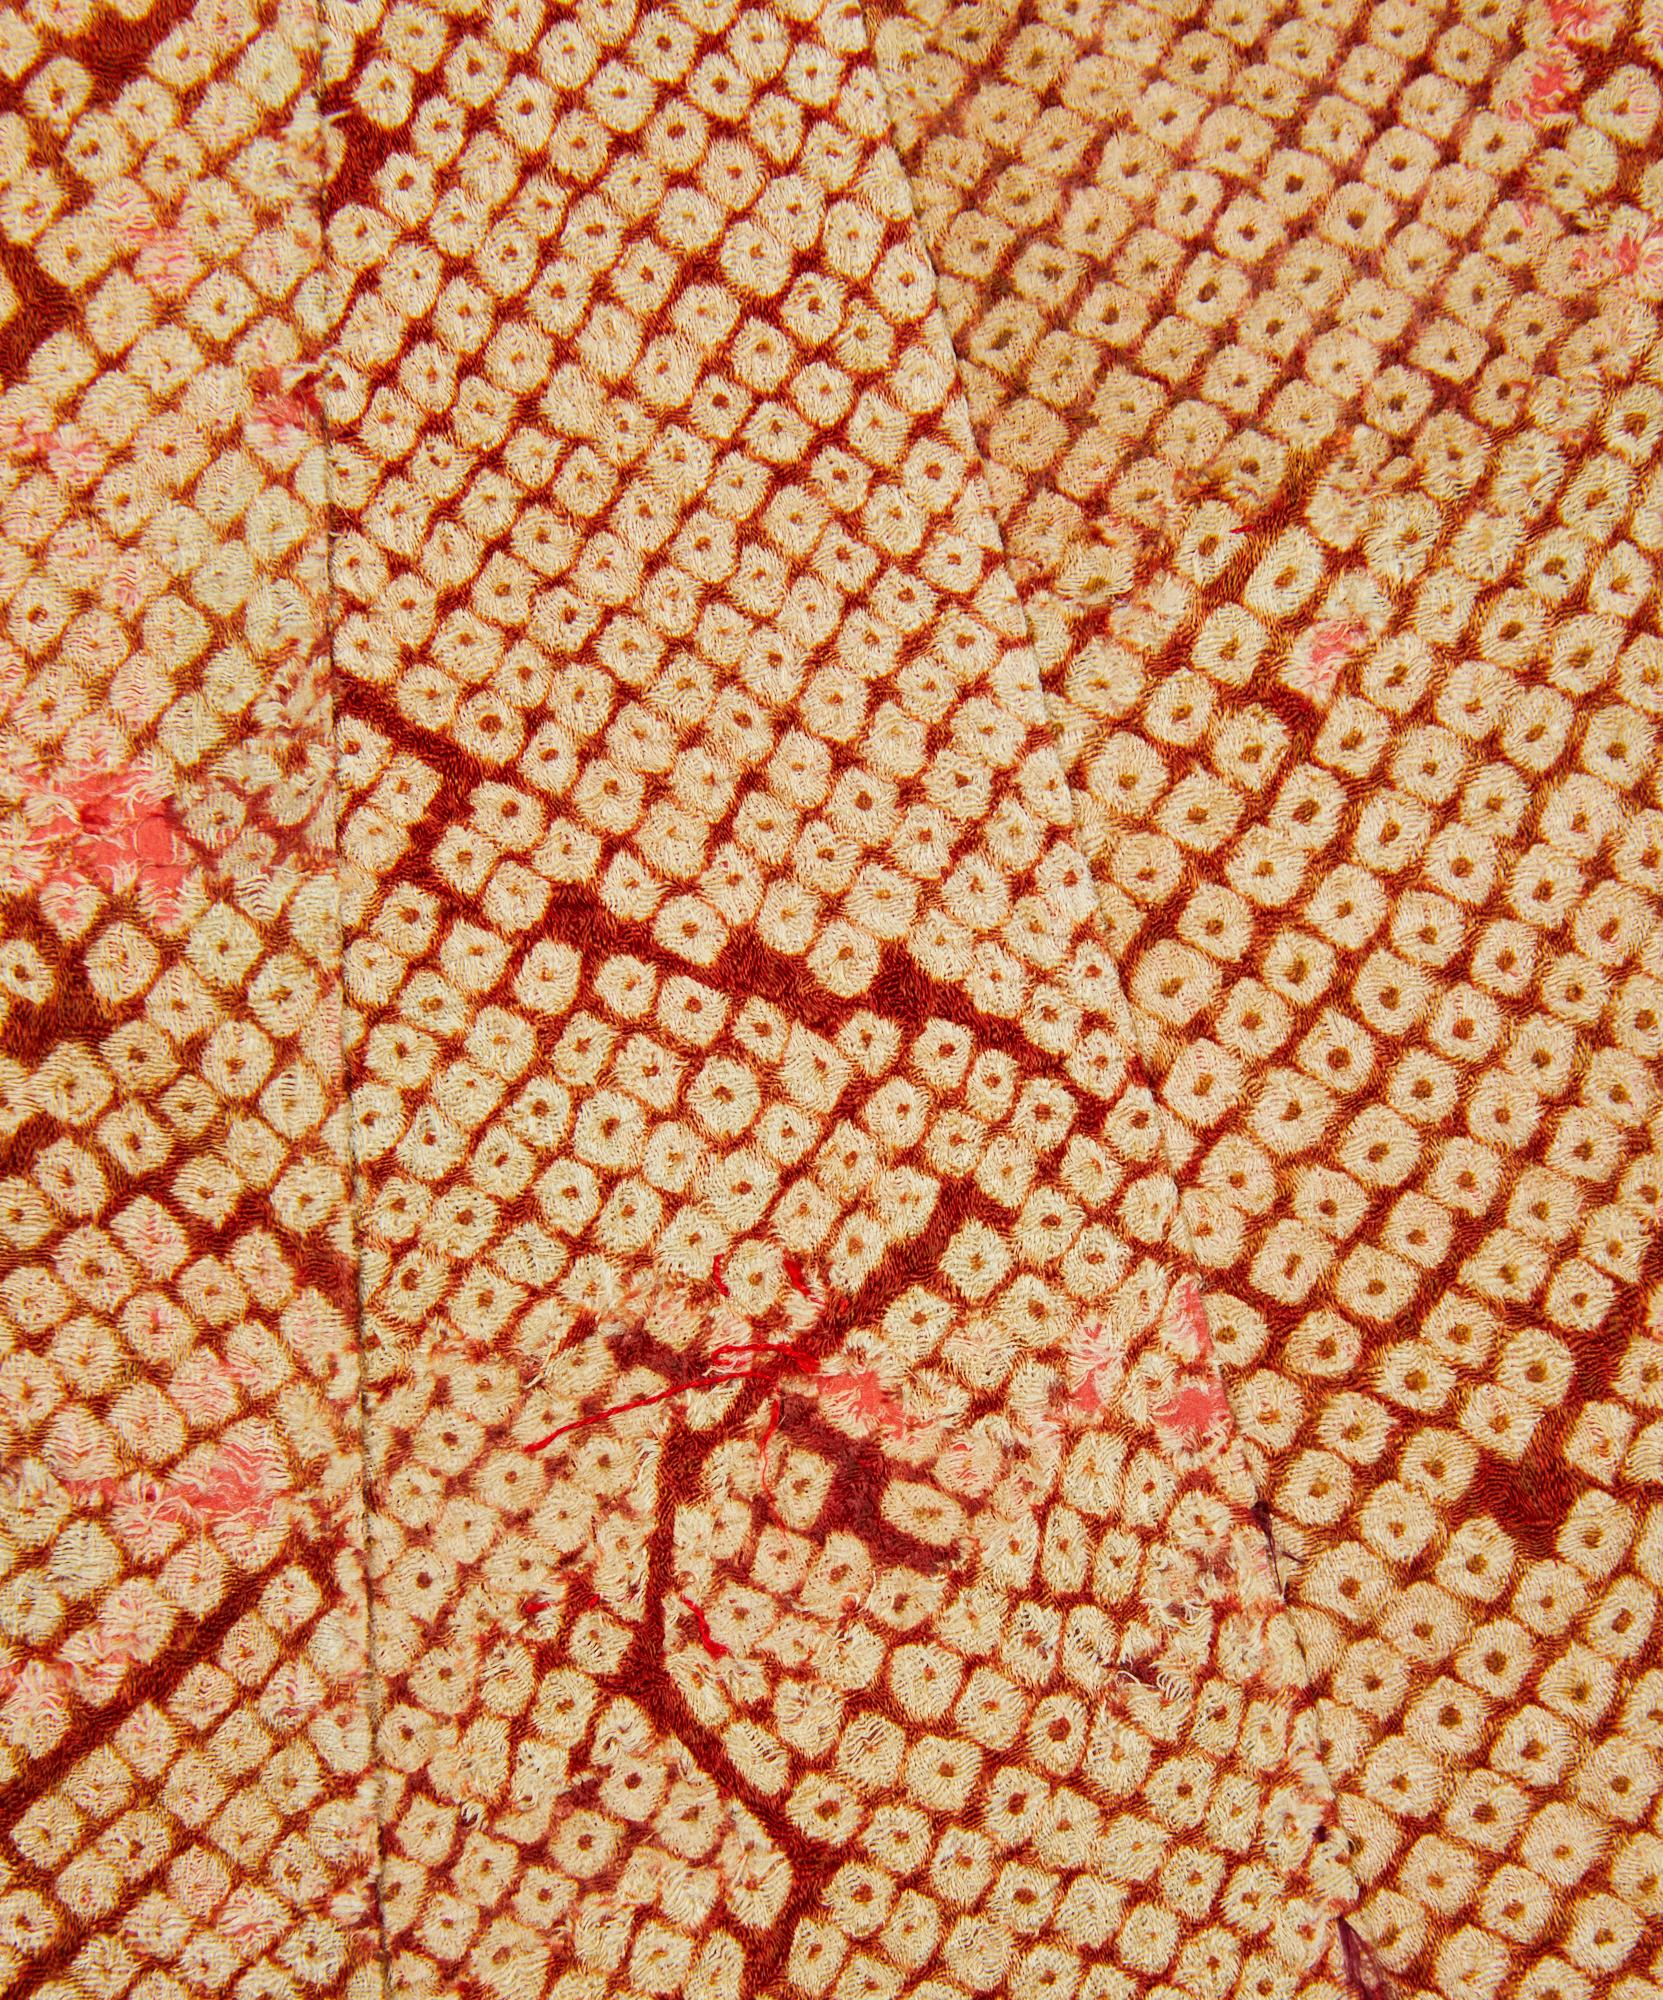 Wunderschönes Shibori-Gewebe aus dem 19. Jahrhundert in Kimonoform auf einem einfachen Grund aus Maulbeerpapier.  Schwarzer Lack mit schön gestalteten Bronzebeschlägen. Der Stoff stammt aus dem Jahr 1825.  Ähnliche Beispiele sind im Tokeyo National